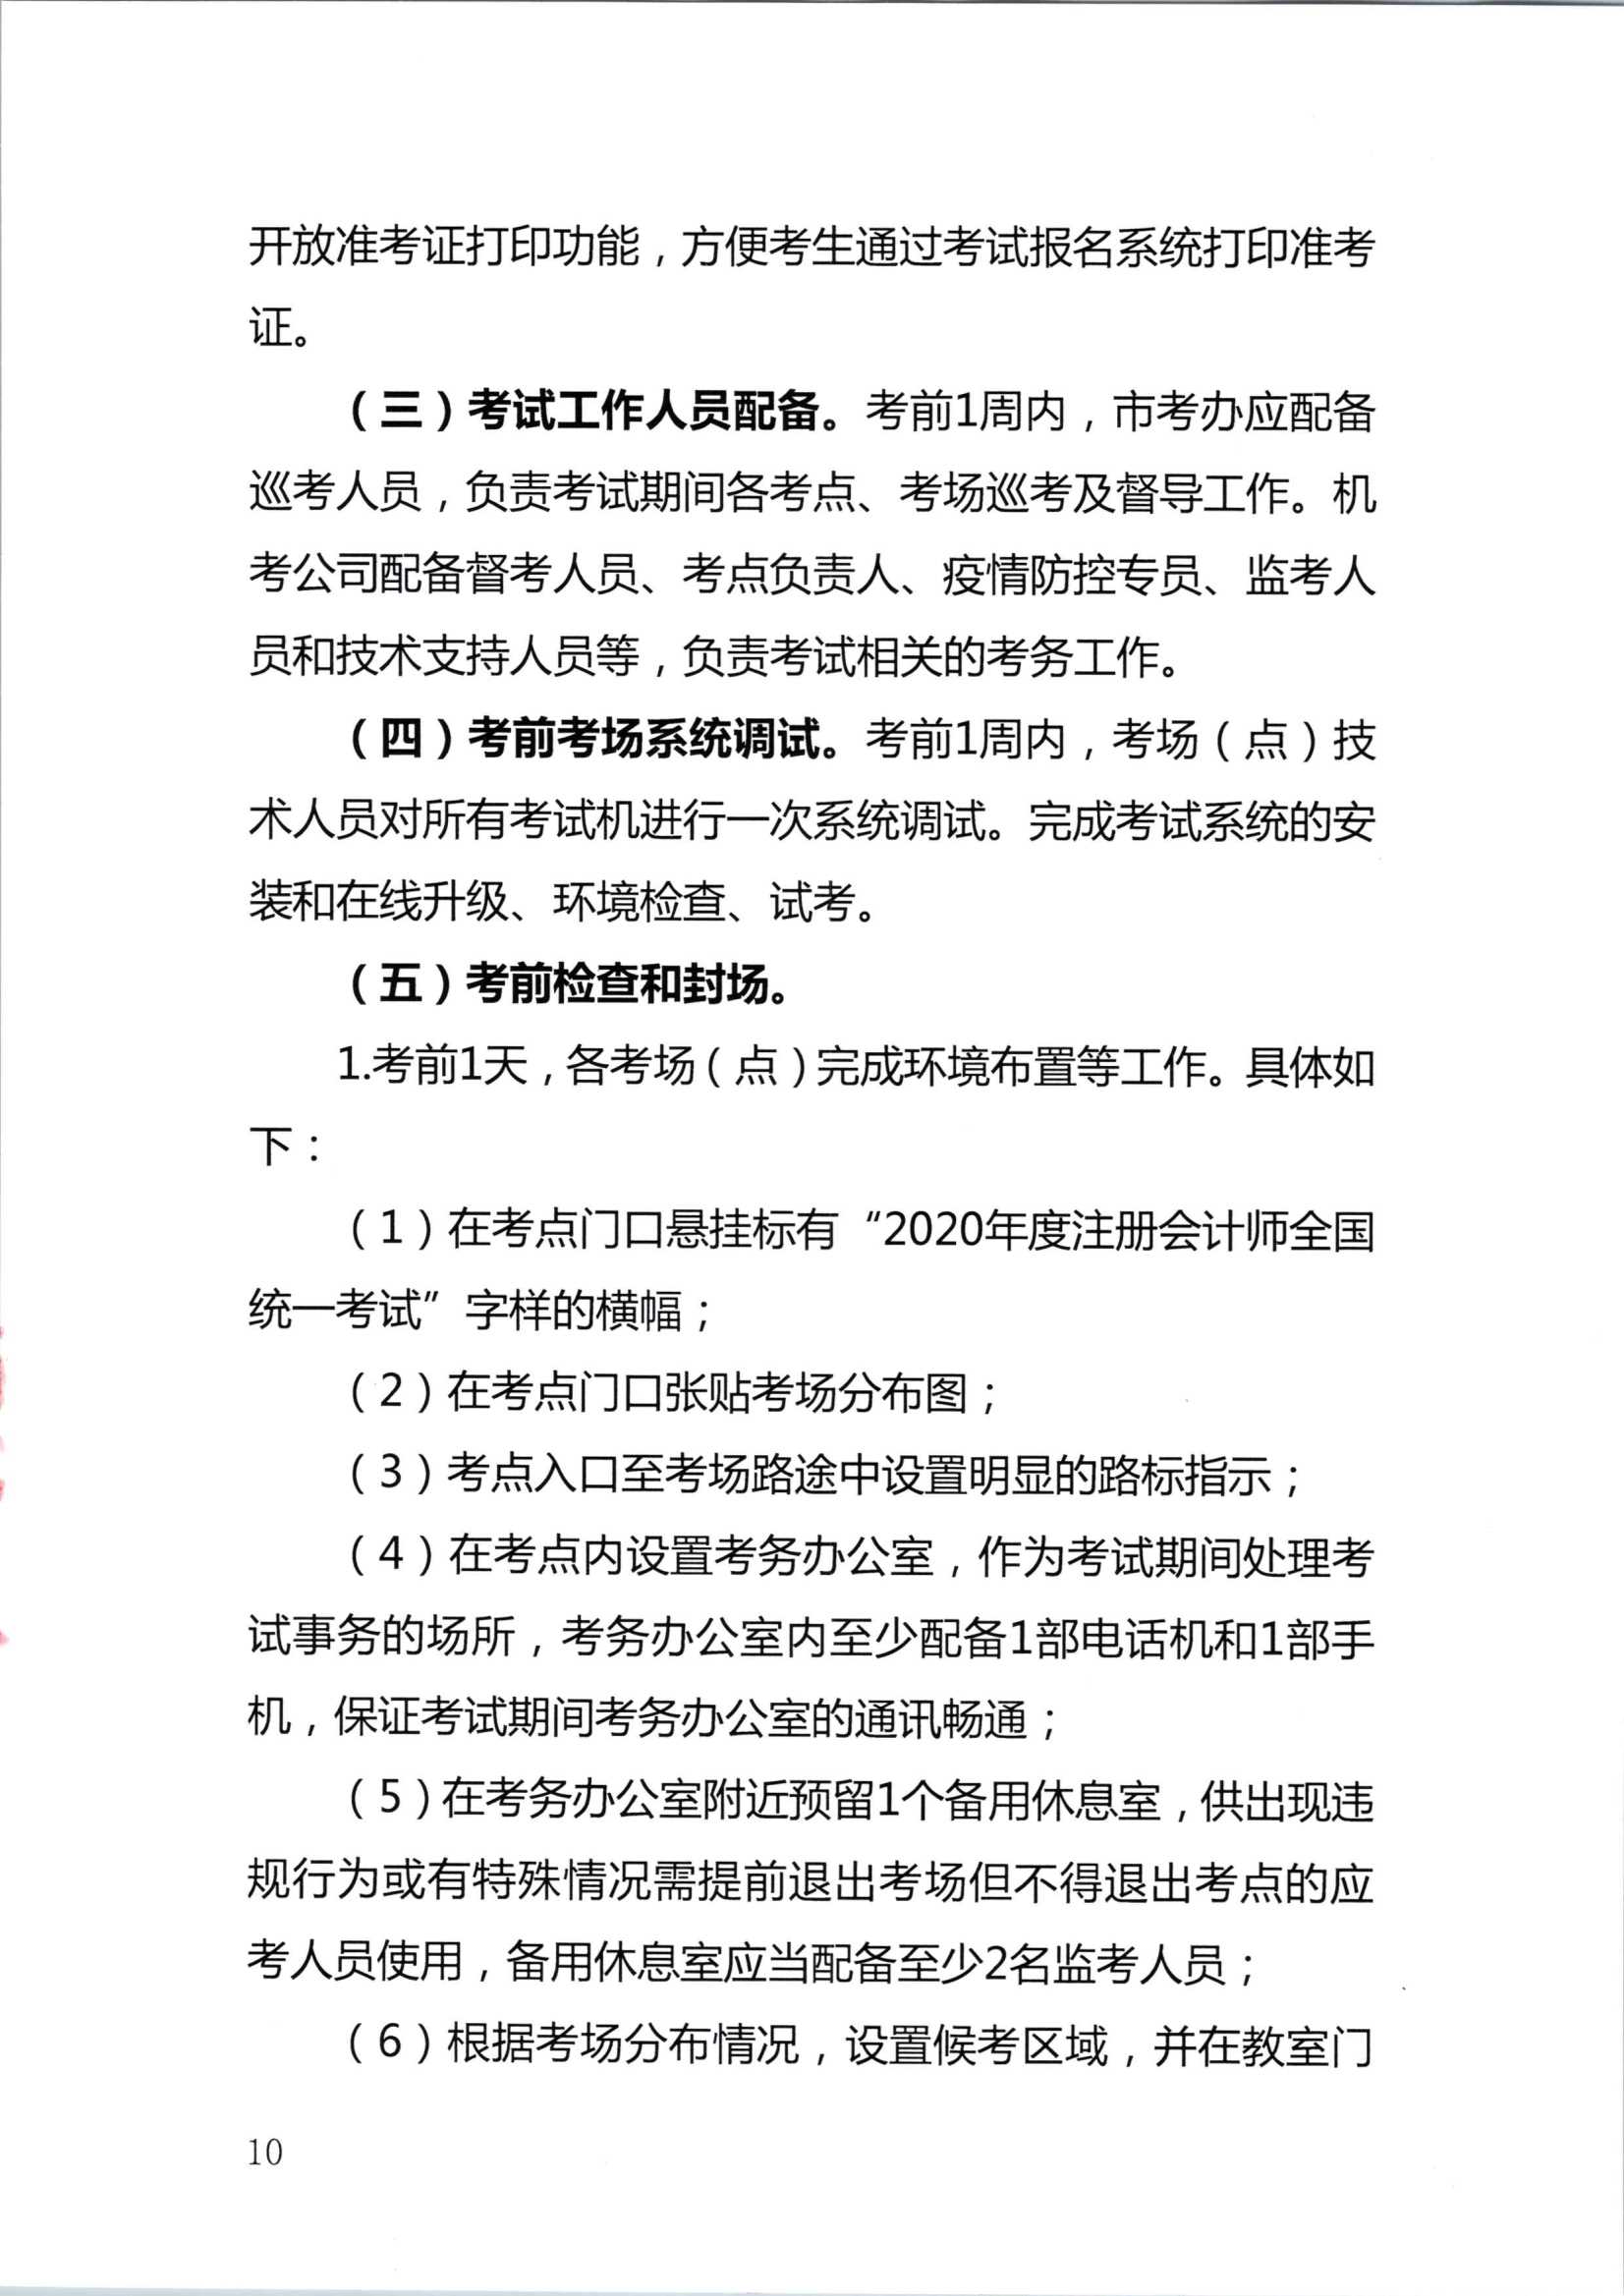 2020年注册会计师全国统一考试深圳考区工作方案_10.Png